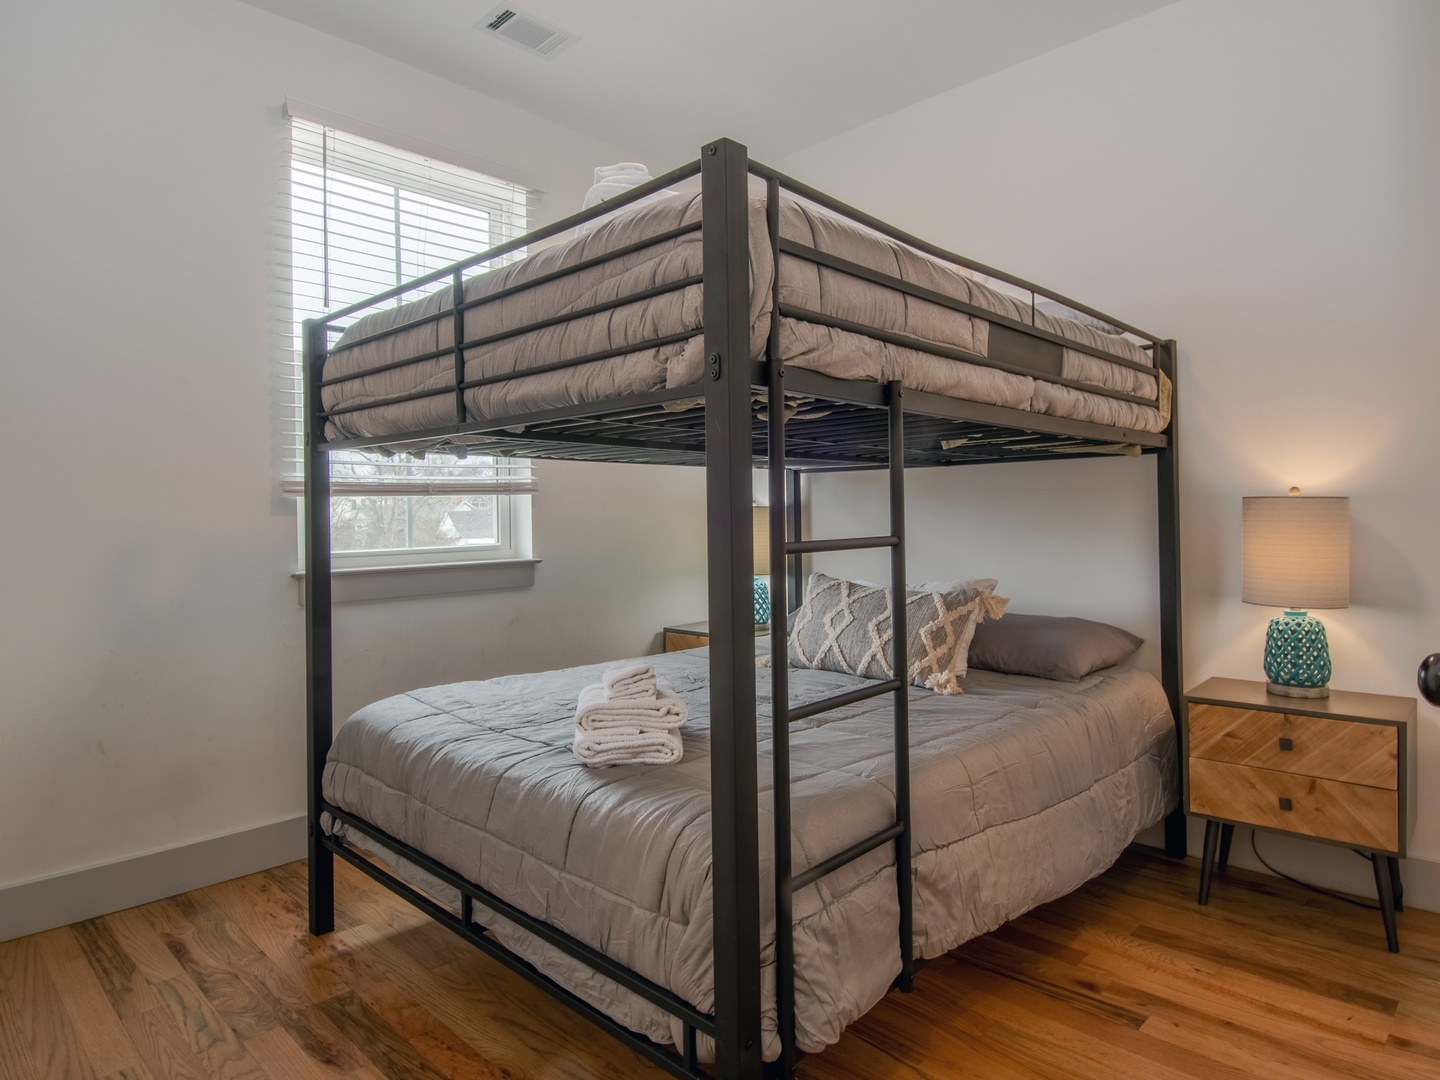 2nd bedroom: Full size bunk bed (3rd floor)